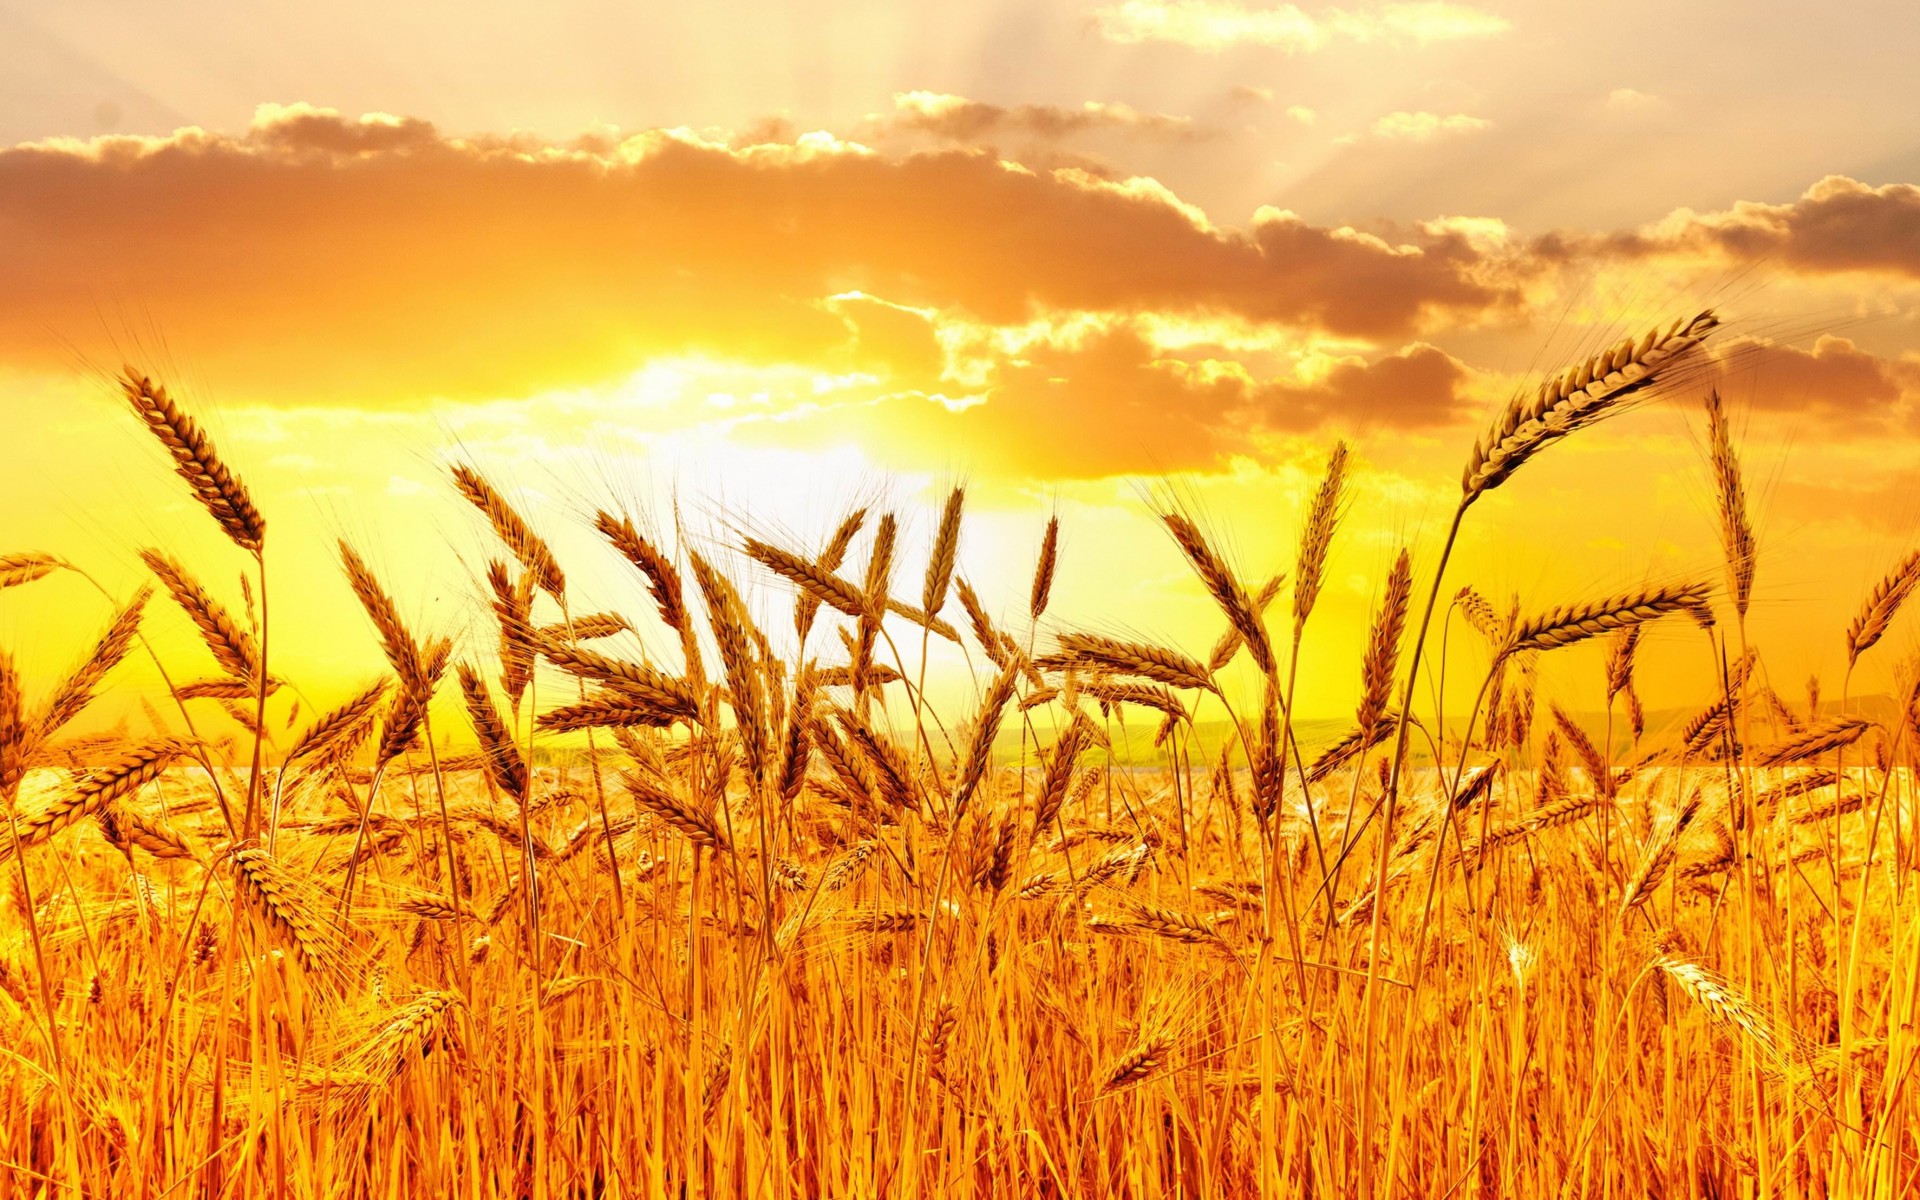 Golden Wheat Field At Sunset Wallpaper for Desktop 1920x1200